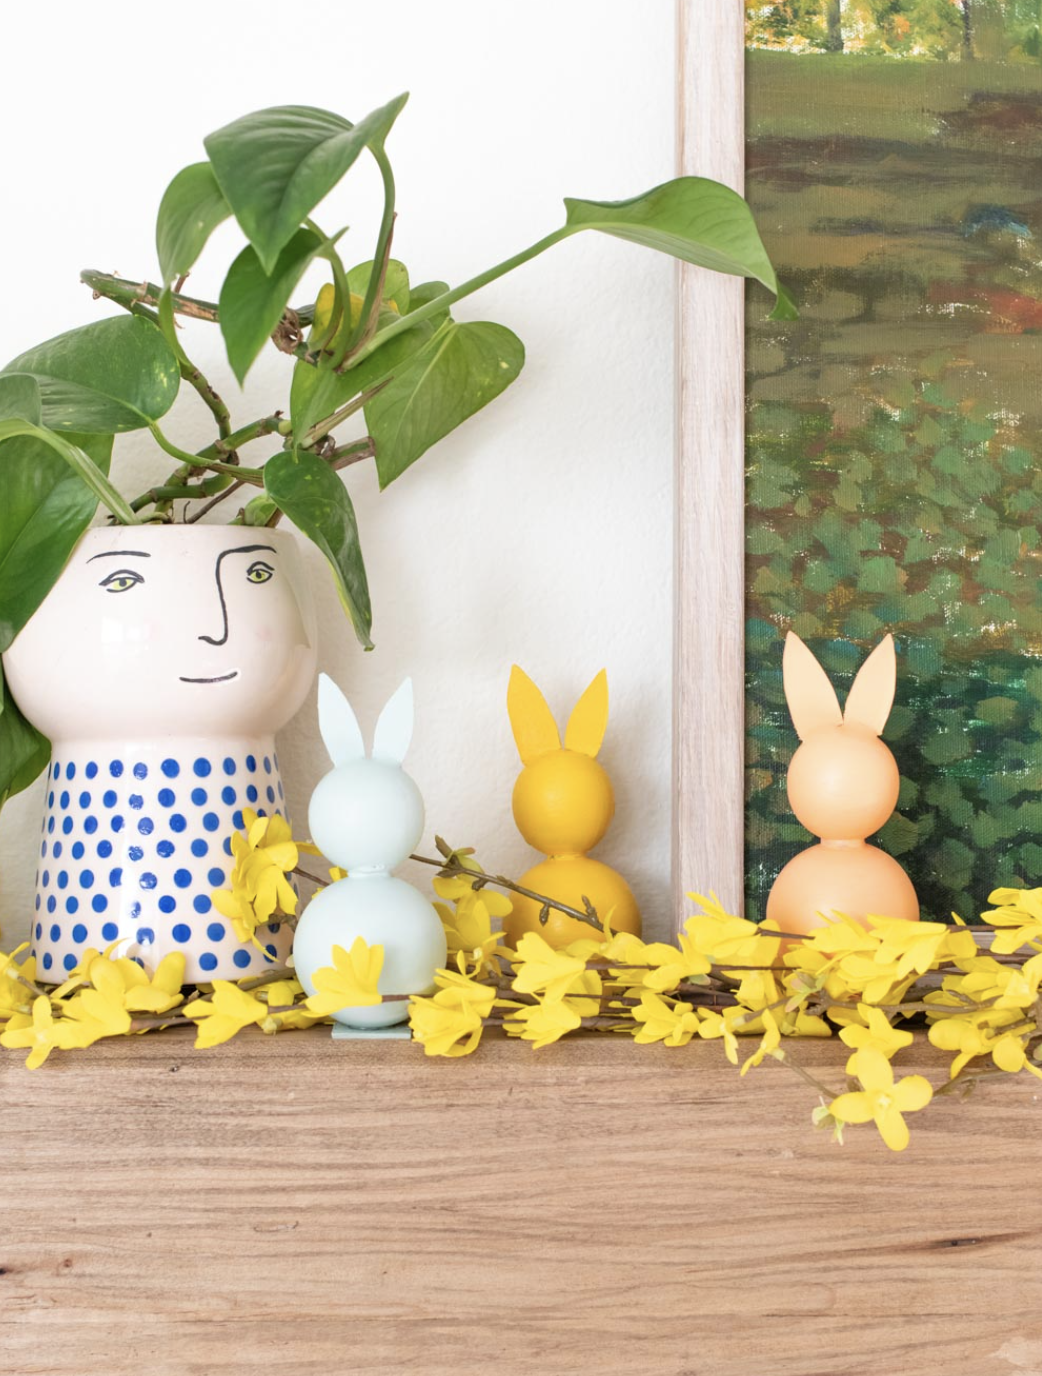 Easter Tree Ornament Decoration Hoppy Bunny Rabbit Handmade Holiday Gift